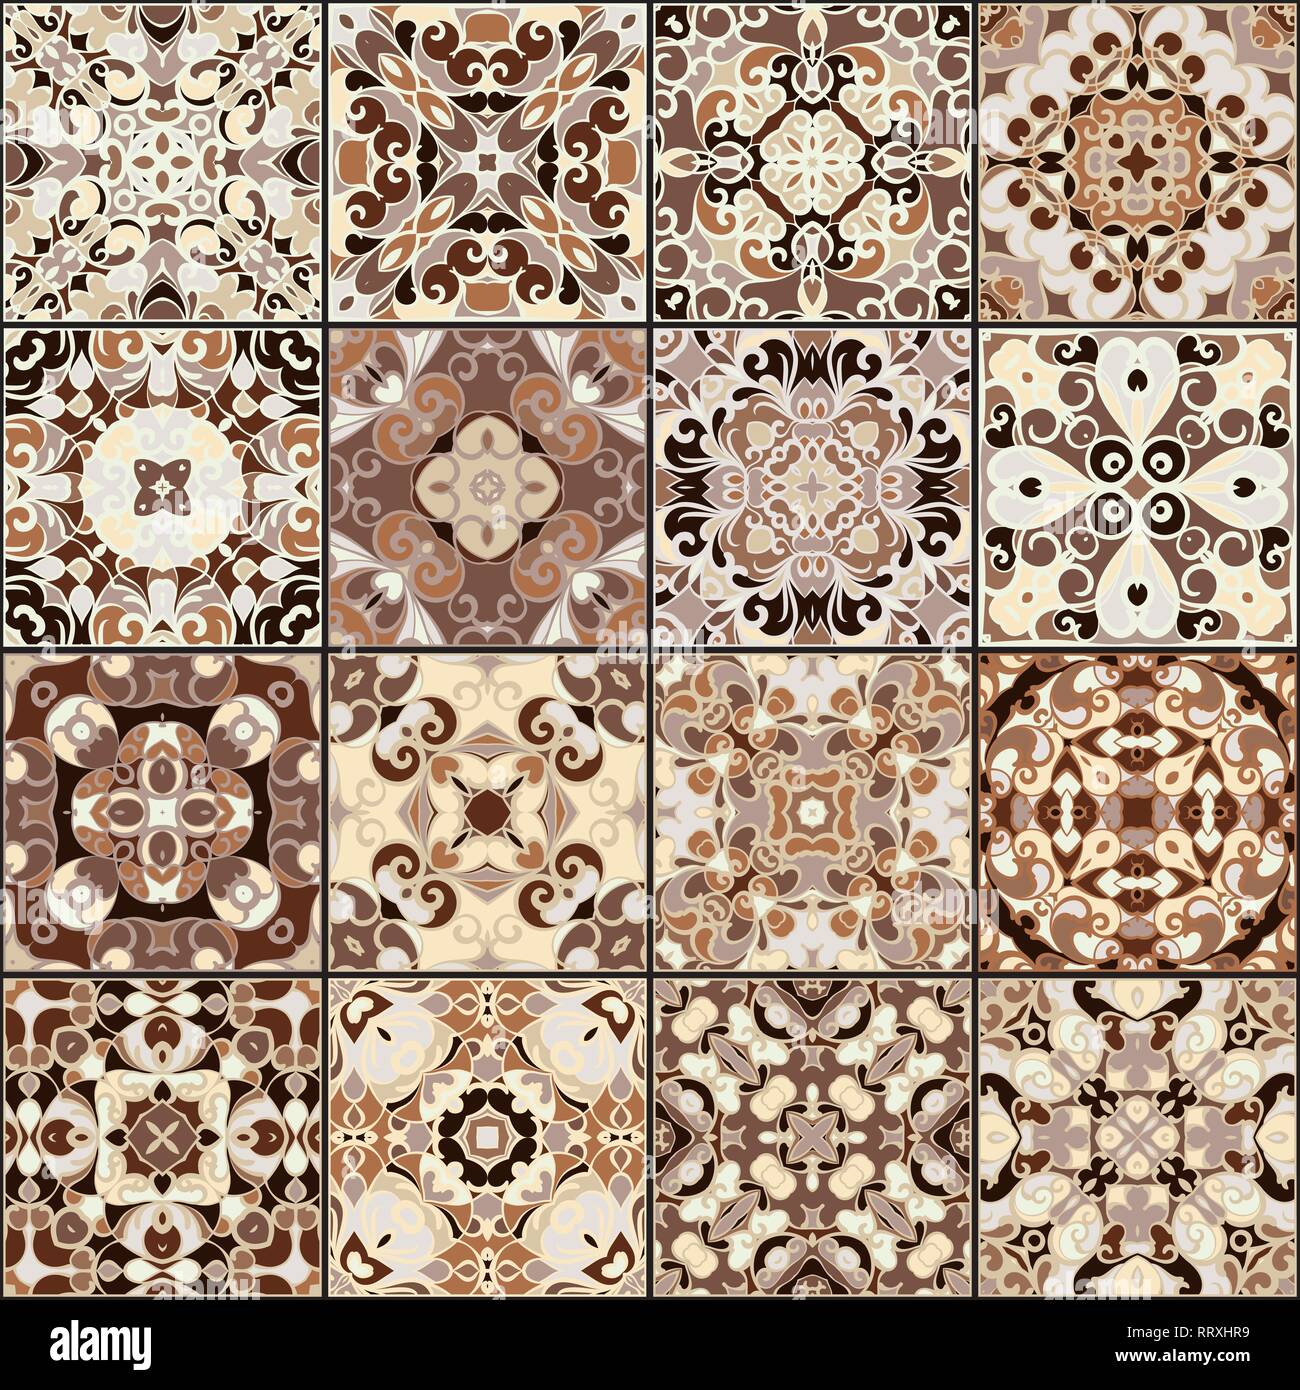 Eine Sammlung von Keramikfliesen in Brauntönen gehalten. Eine Reihe von quadratischen Muster im ethnischen Stil. Vector Illustration. Stock Vektor